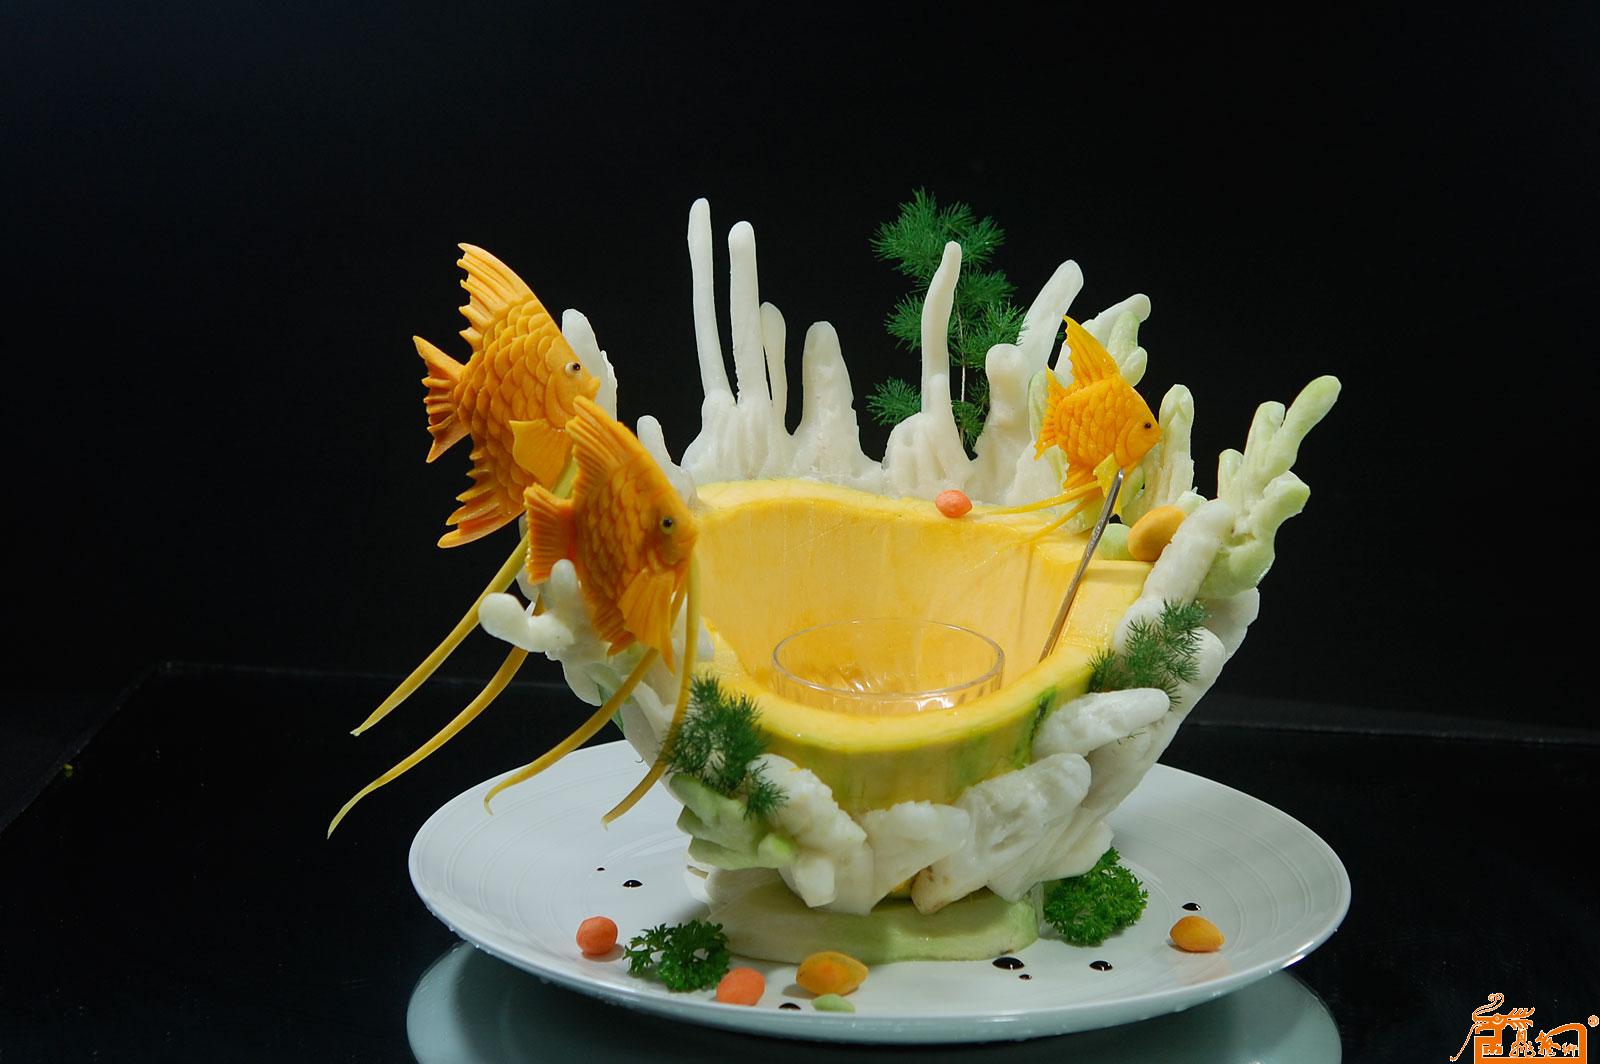 食品雕刻器皿作品- 珊瑚情